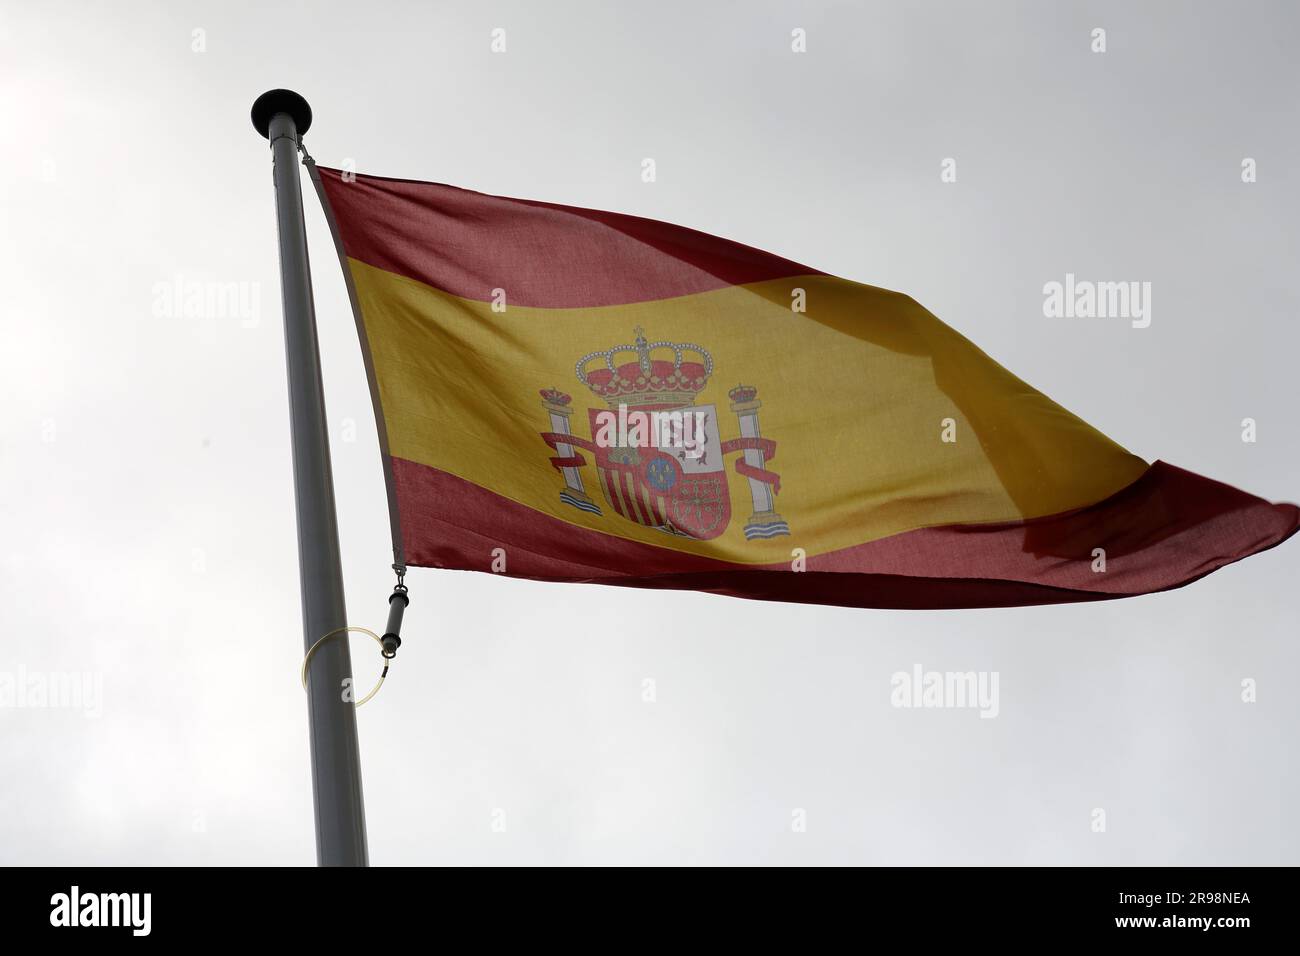 Drapeau national espagnol agitant dans le ciel. Banque D'Images